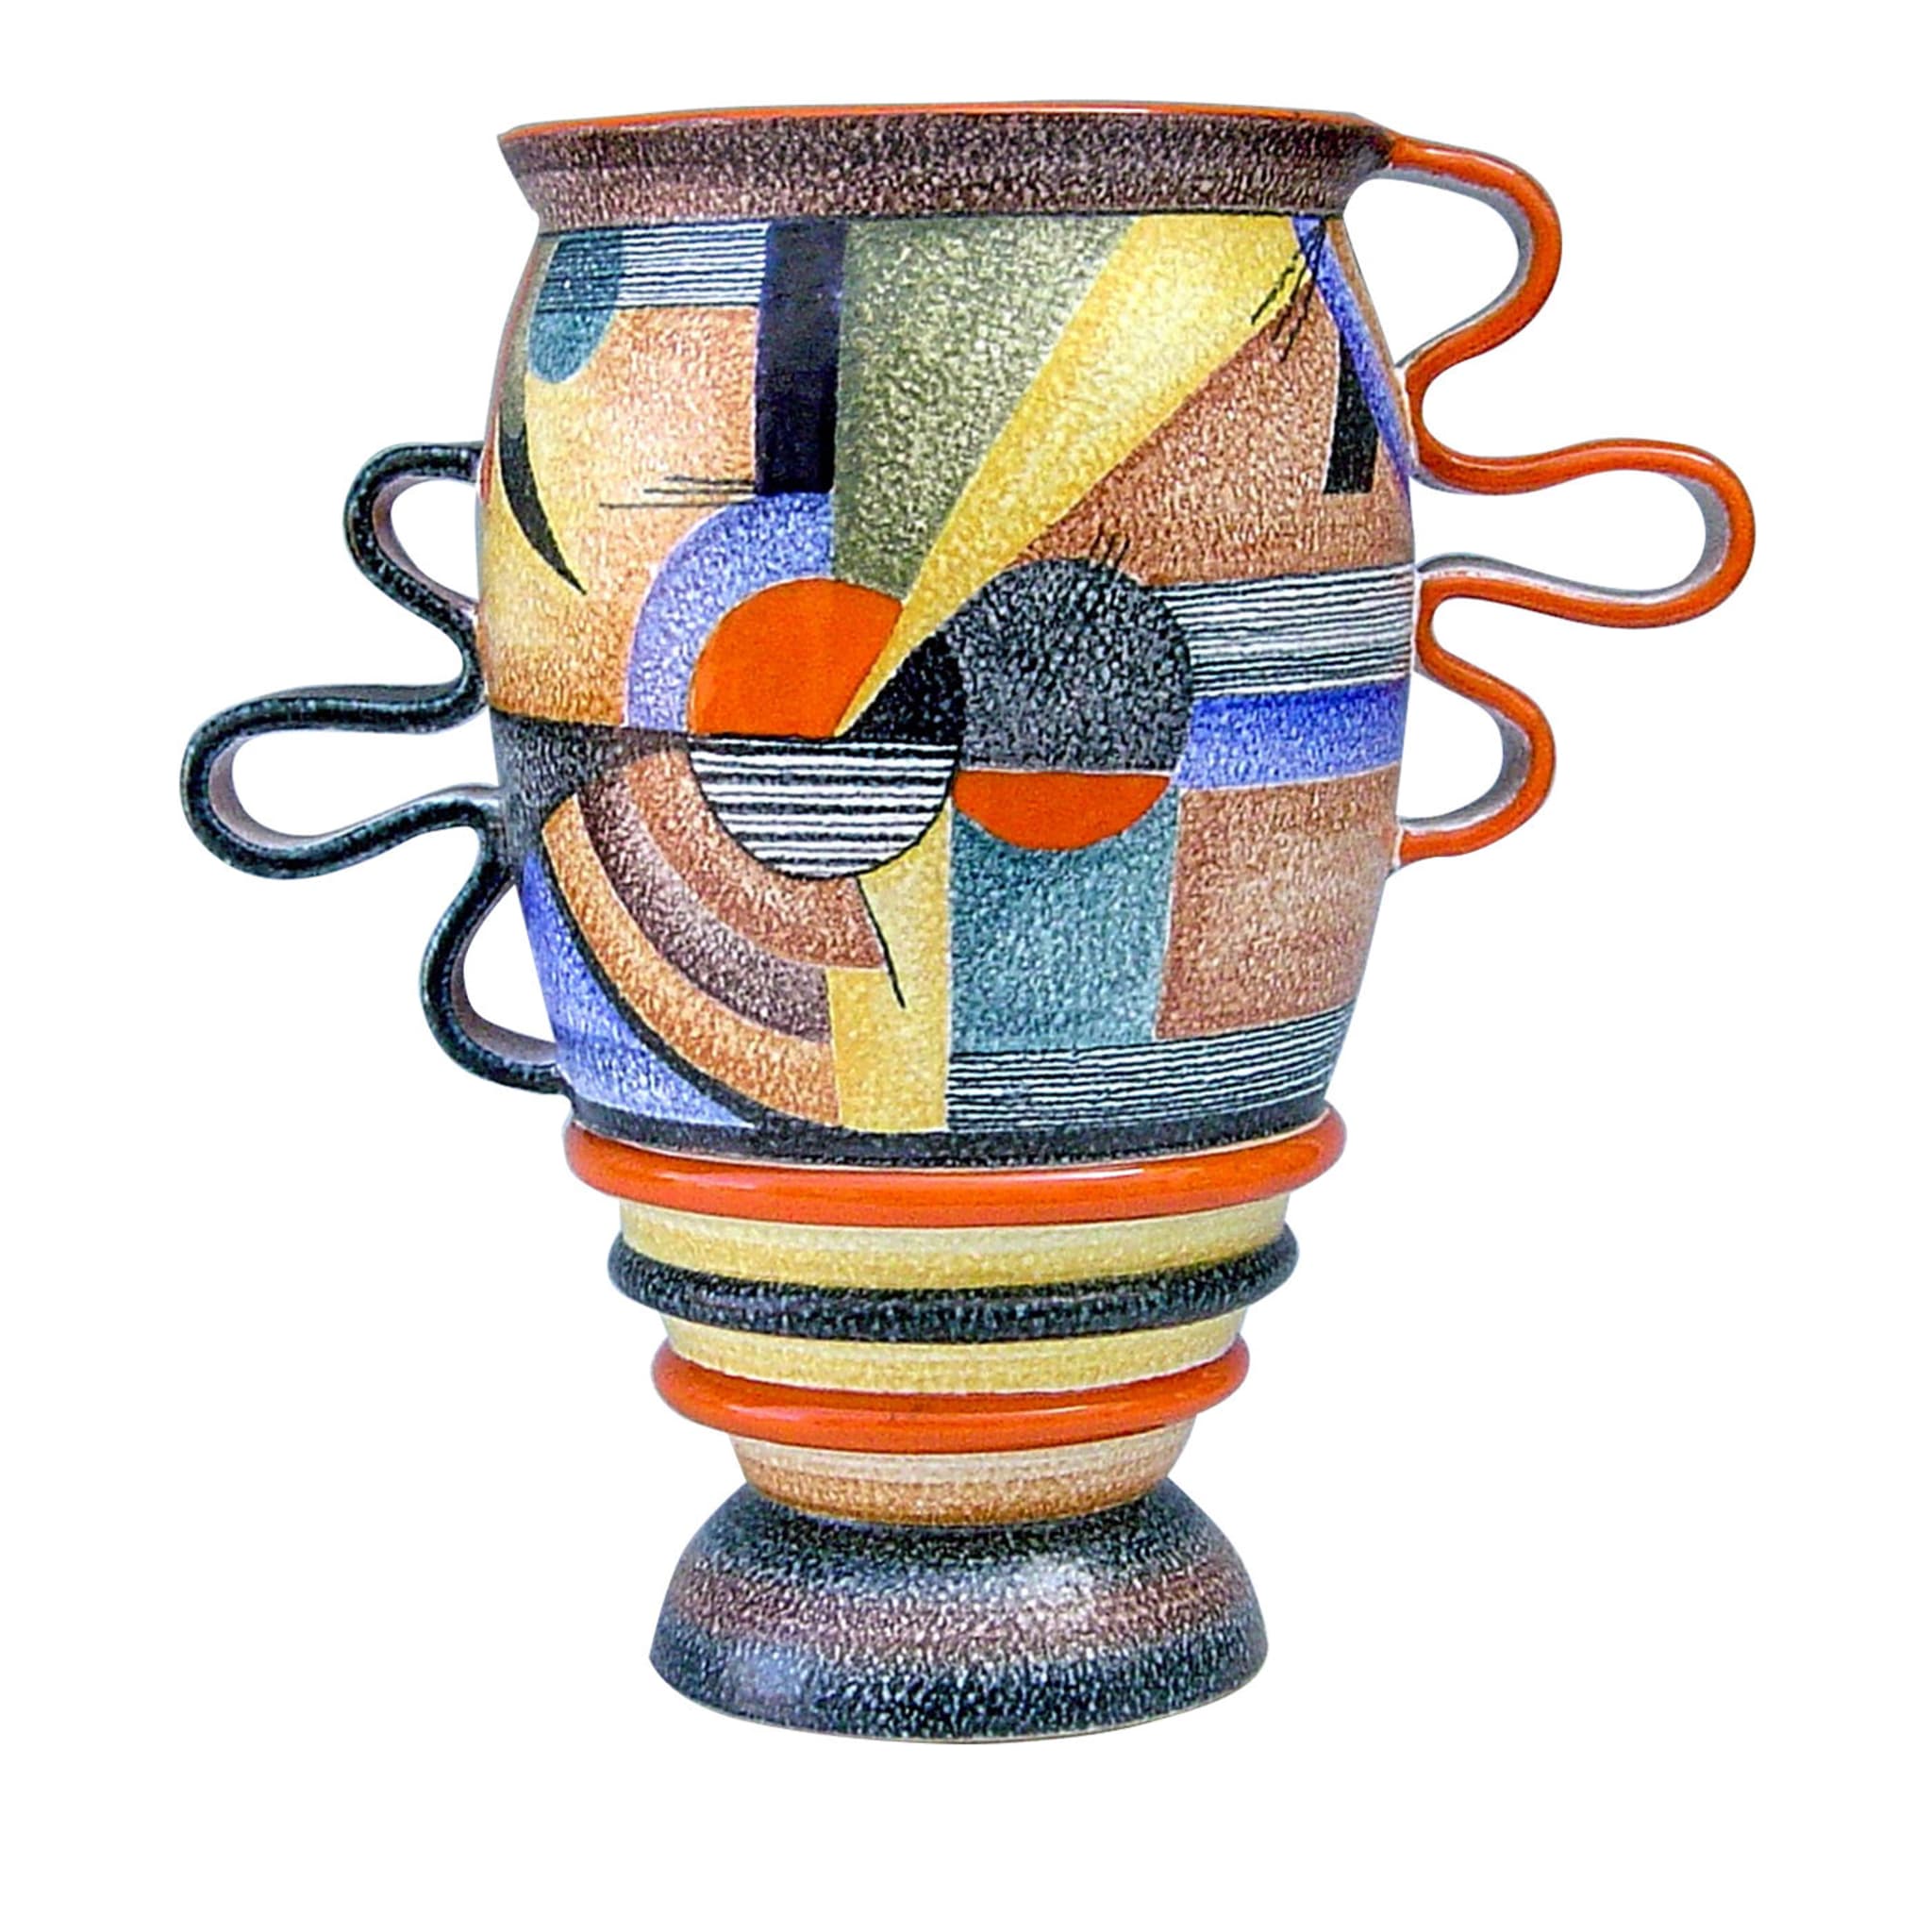 Futurista 900 Ceramic Vase - Main view